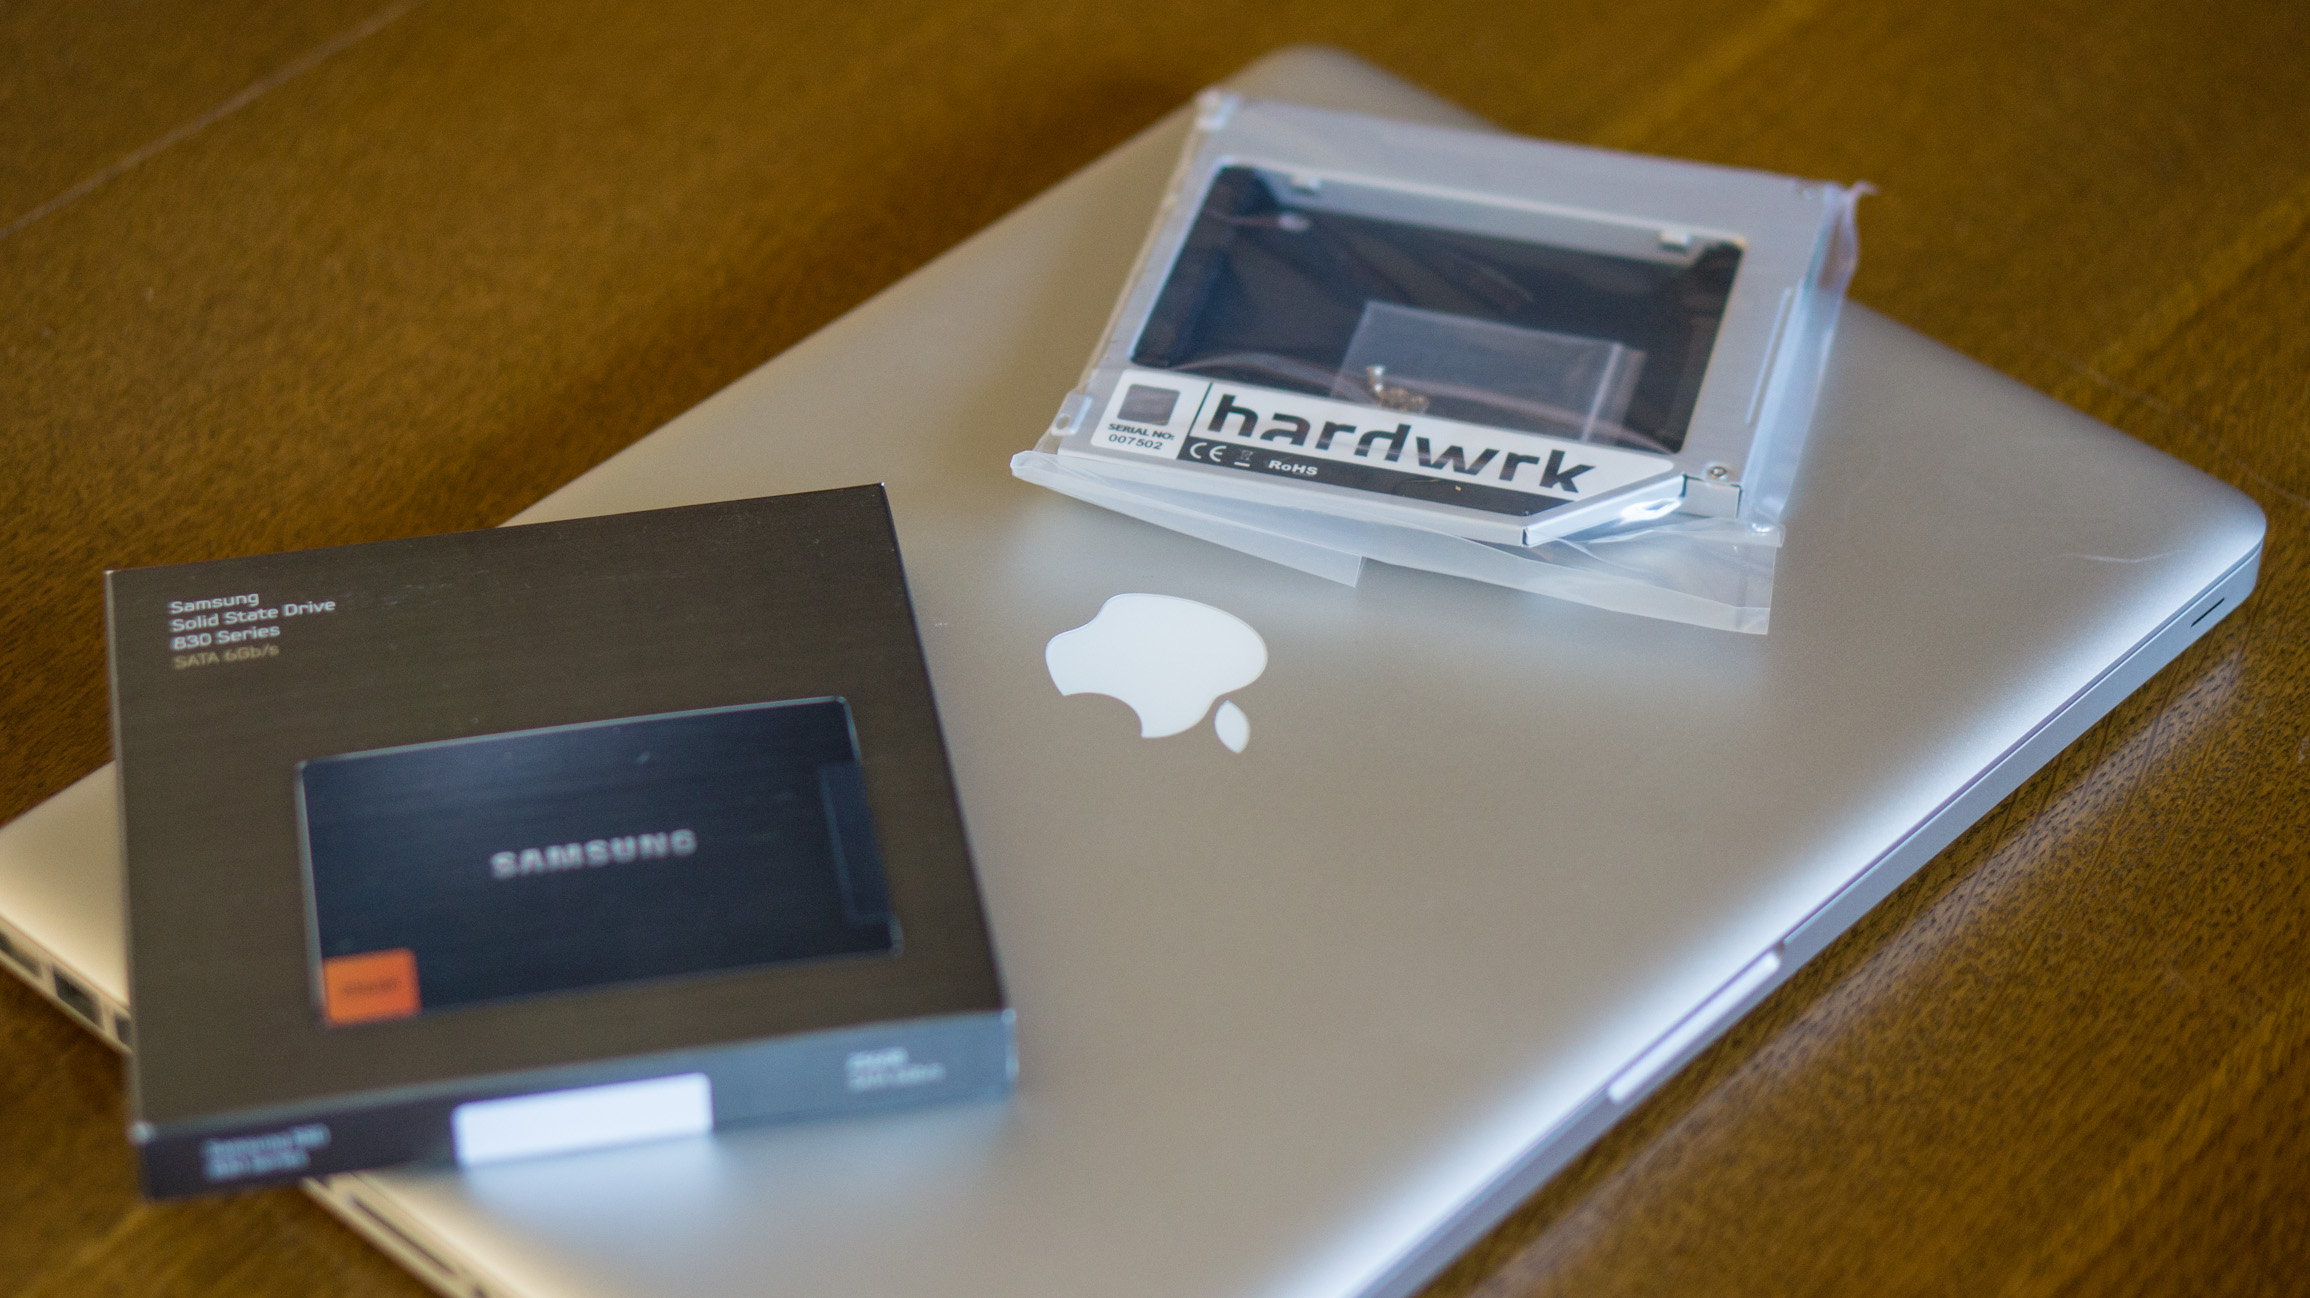 Macbook Pro early 2011 – Umbau auf zwei SSD Festplatten